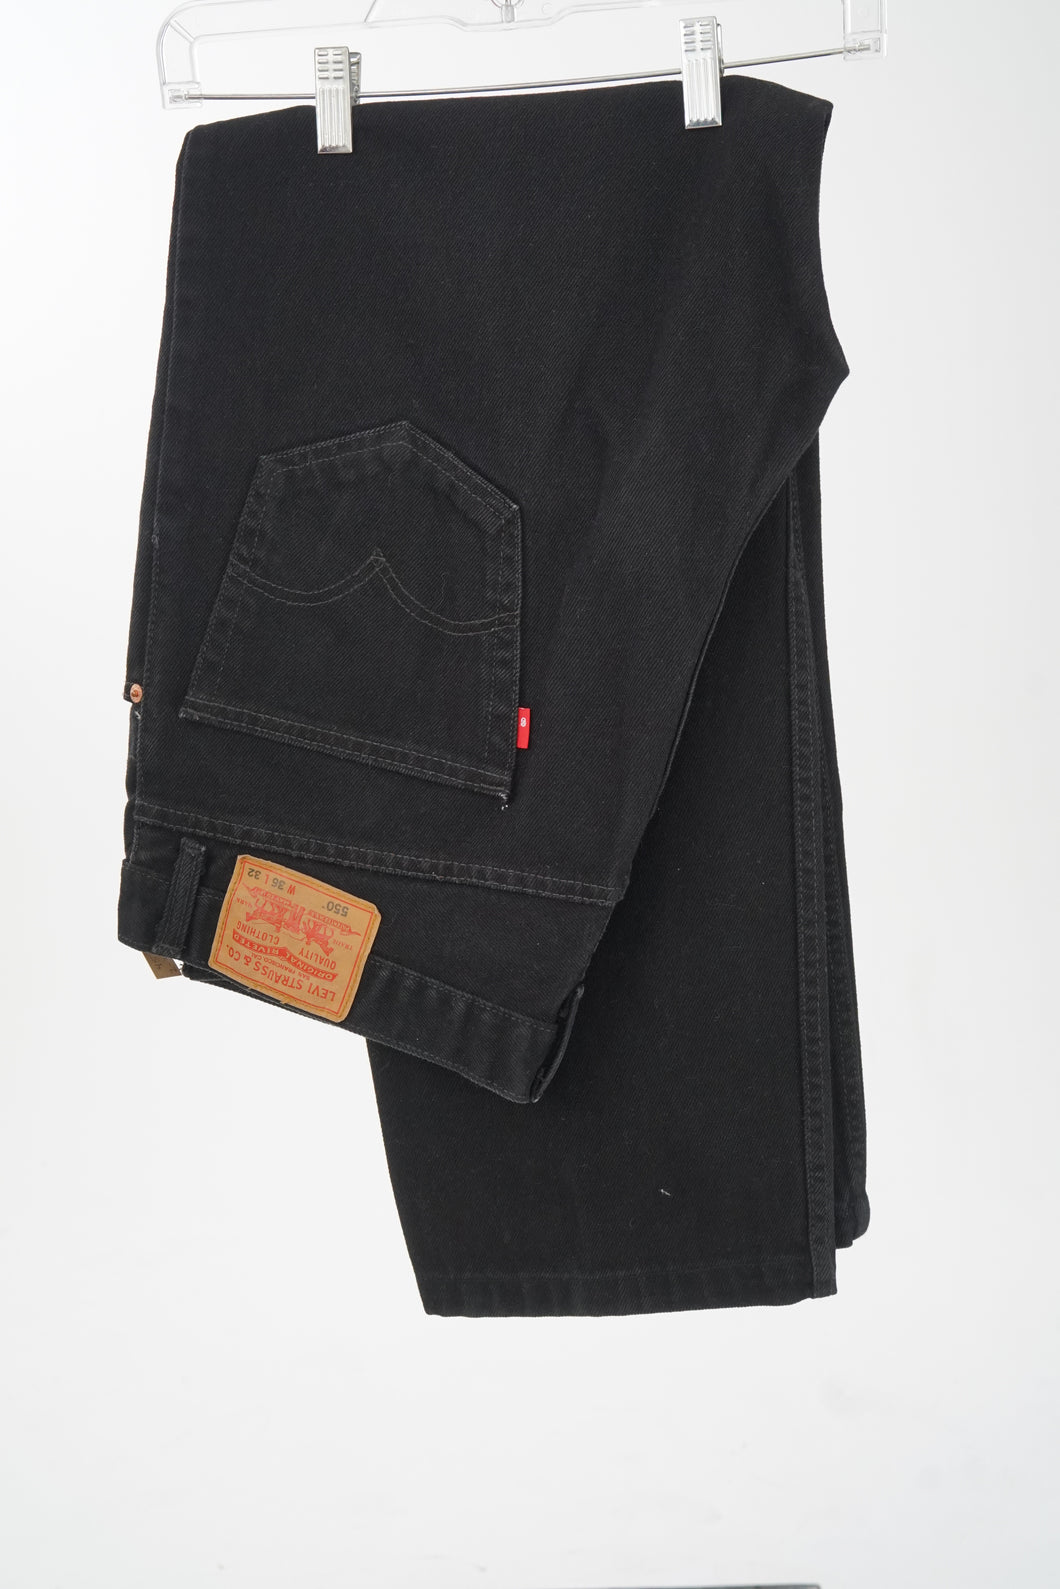 Jeans Levis noir 550 boot cut taille 36x32